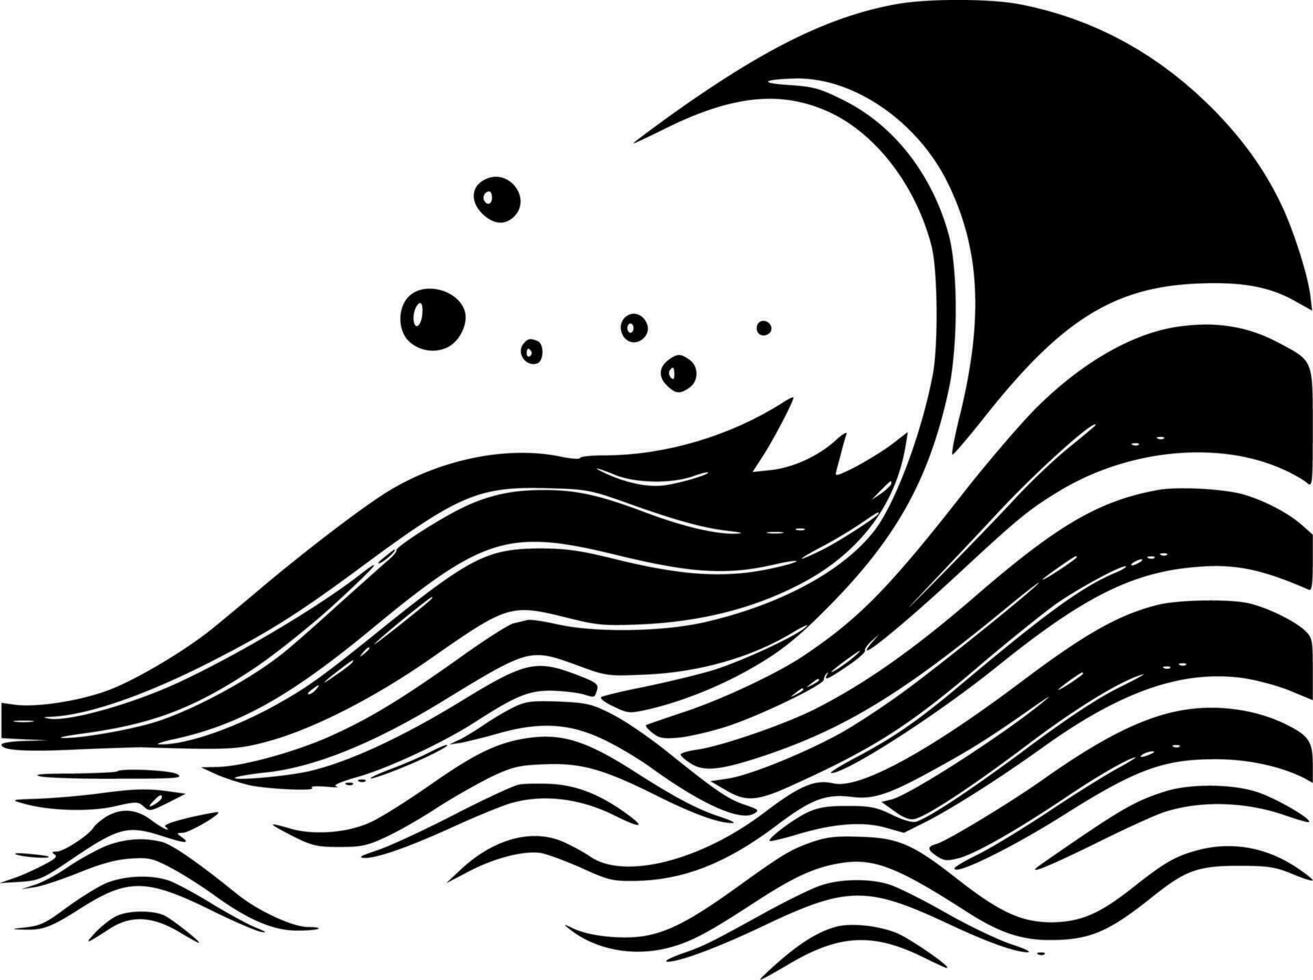 vagues - haute qualité vecteur logo - vecteur illustration idéal pour T-shirt graphique